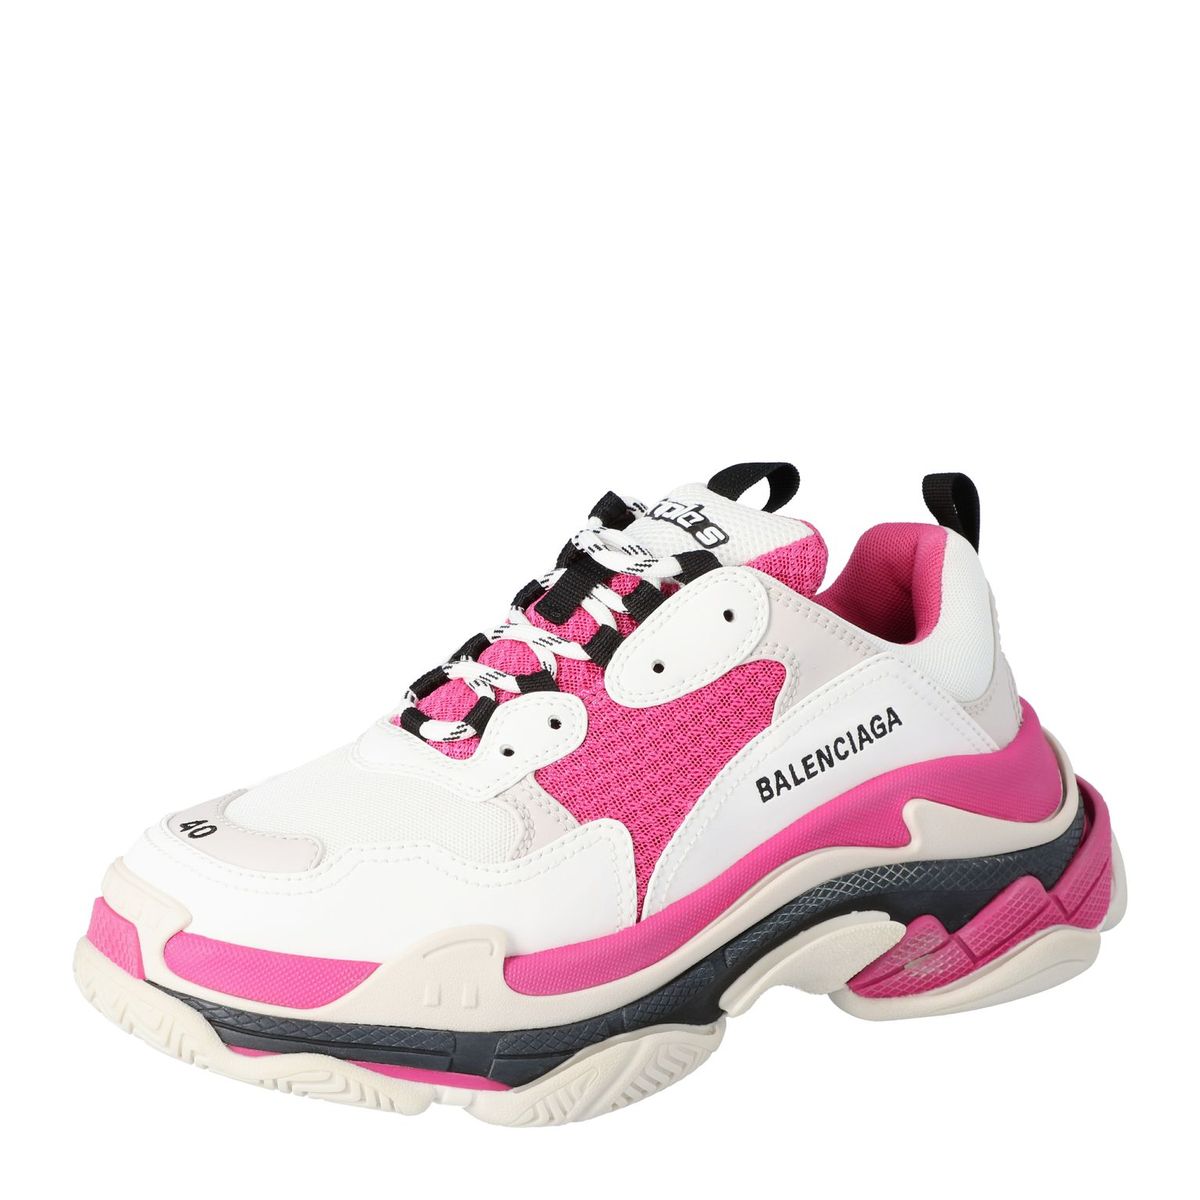 balenciaga sneakers pink